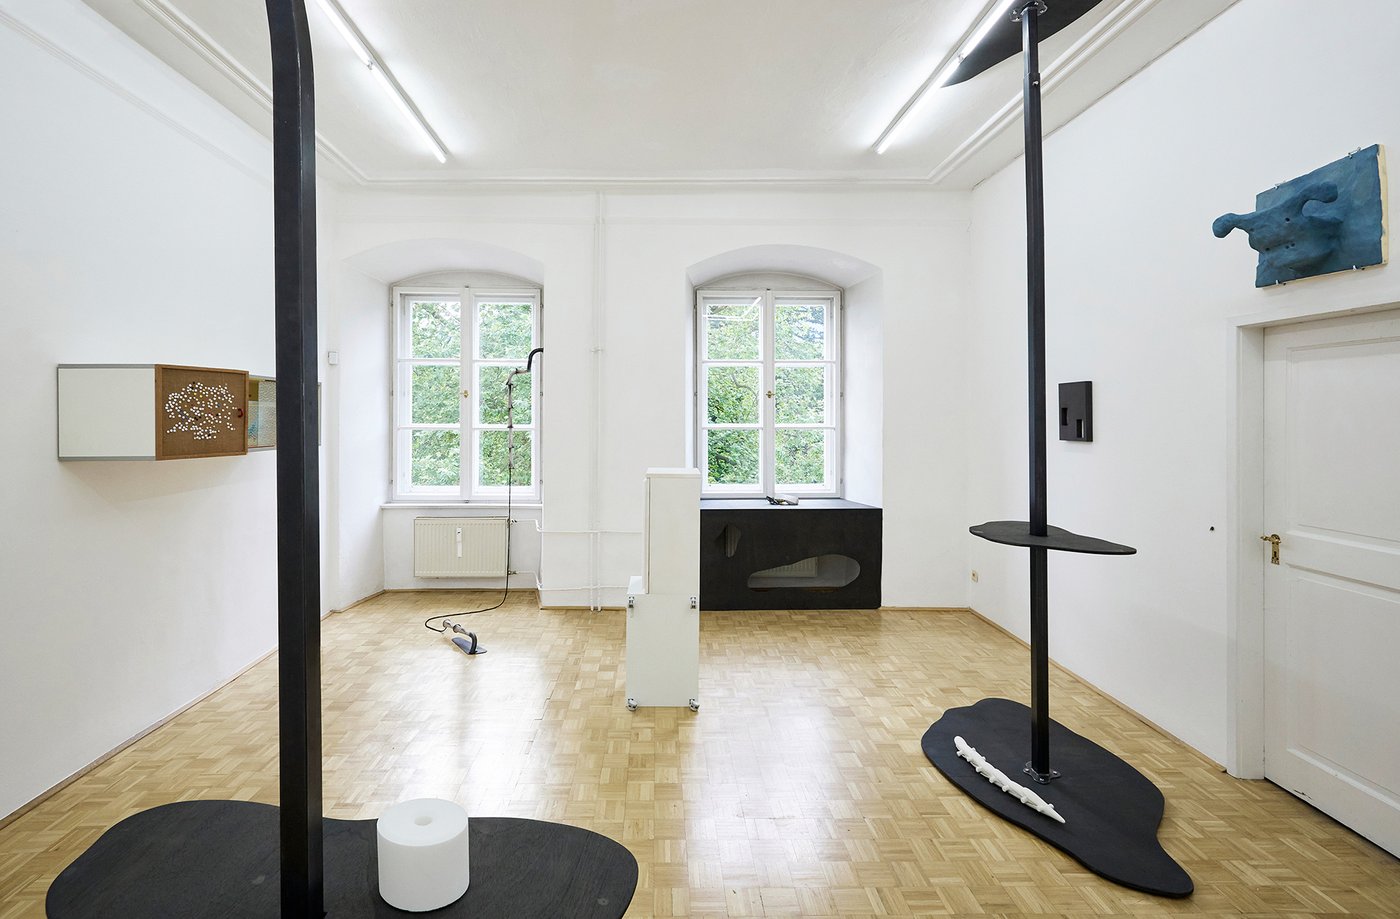 Ausstellungsansicht mit diversen Kunstobjekten in einem hellen weißen Raum